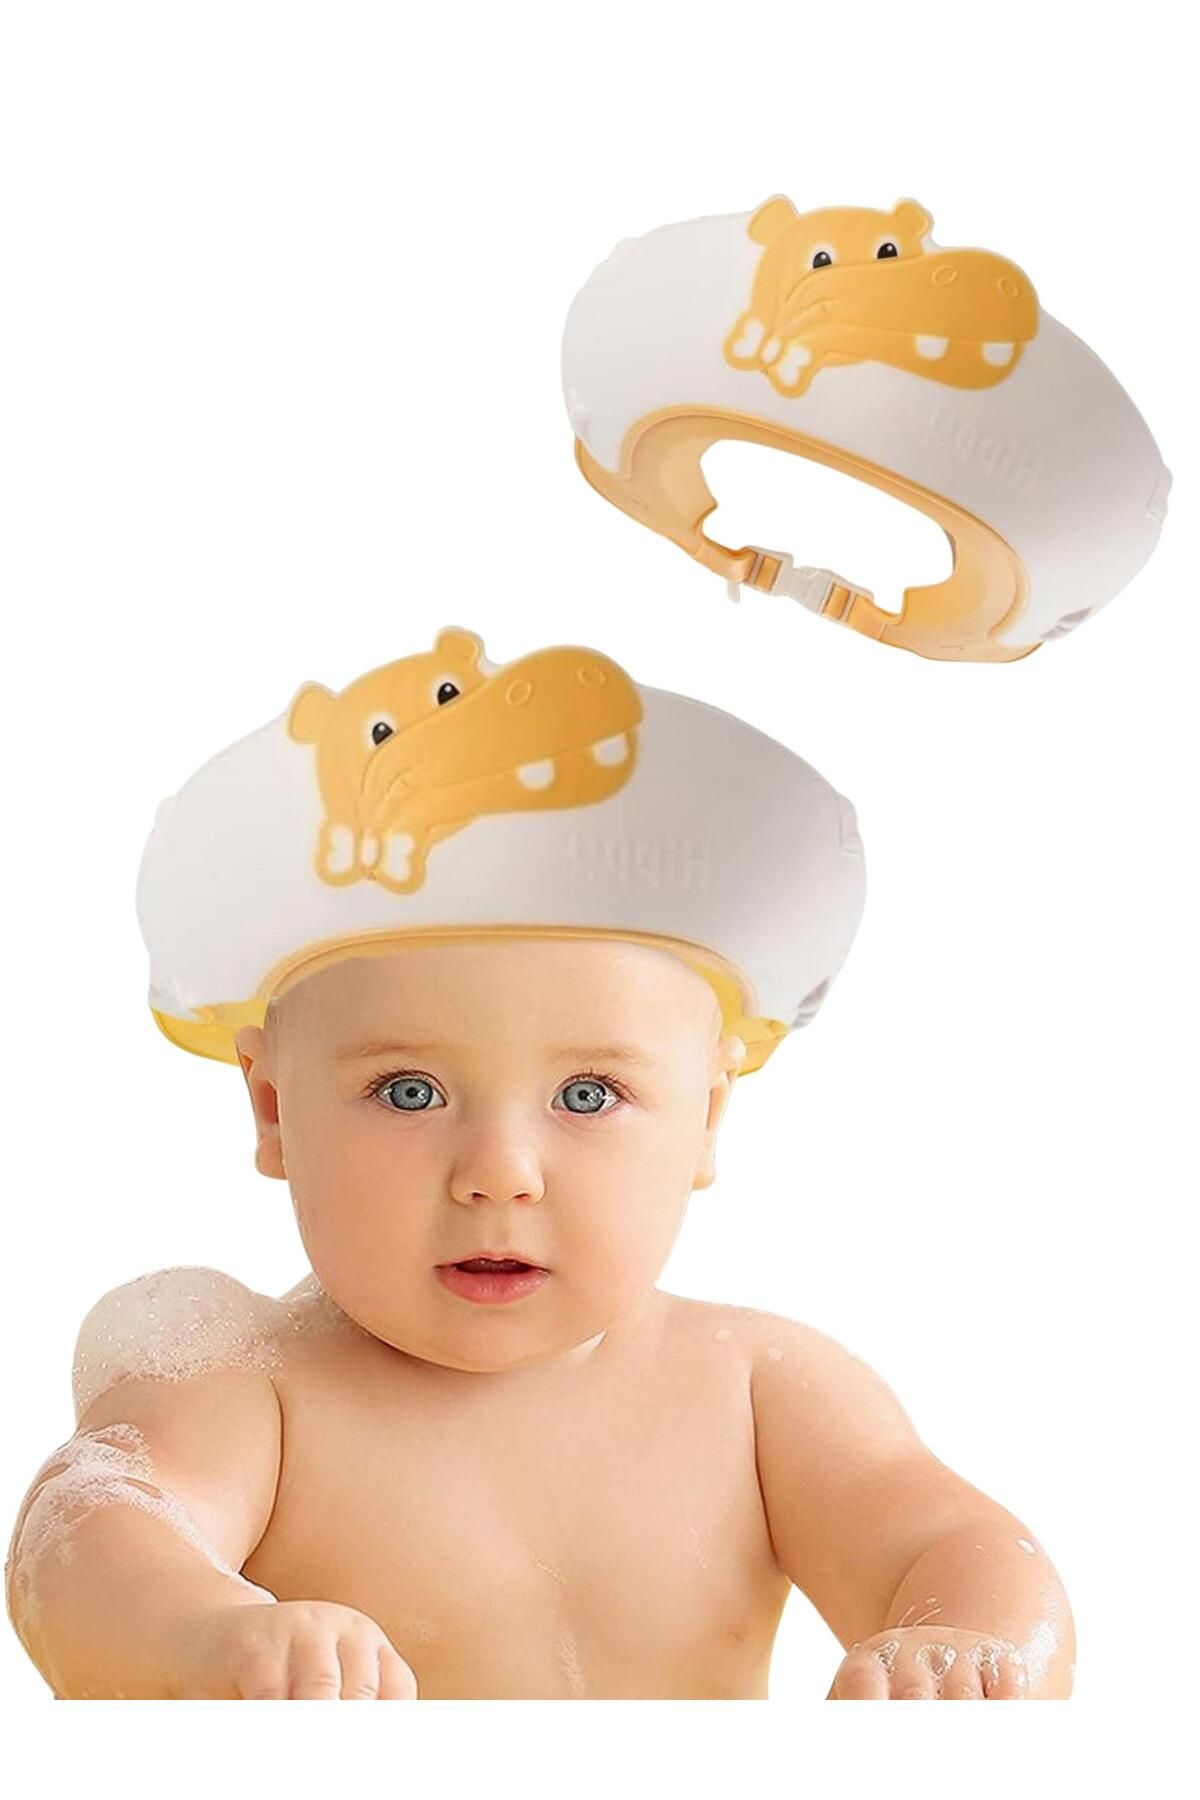 MooieBaby's Hippo Banyo Şapkası , Slikon Çocuk Duş Tacı , Sevimli Hipopotam , Ayarlanabilir Tasarım, 6ay-9yaş